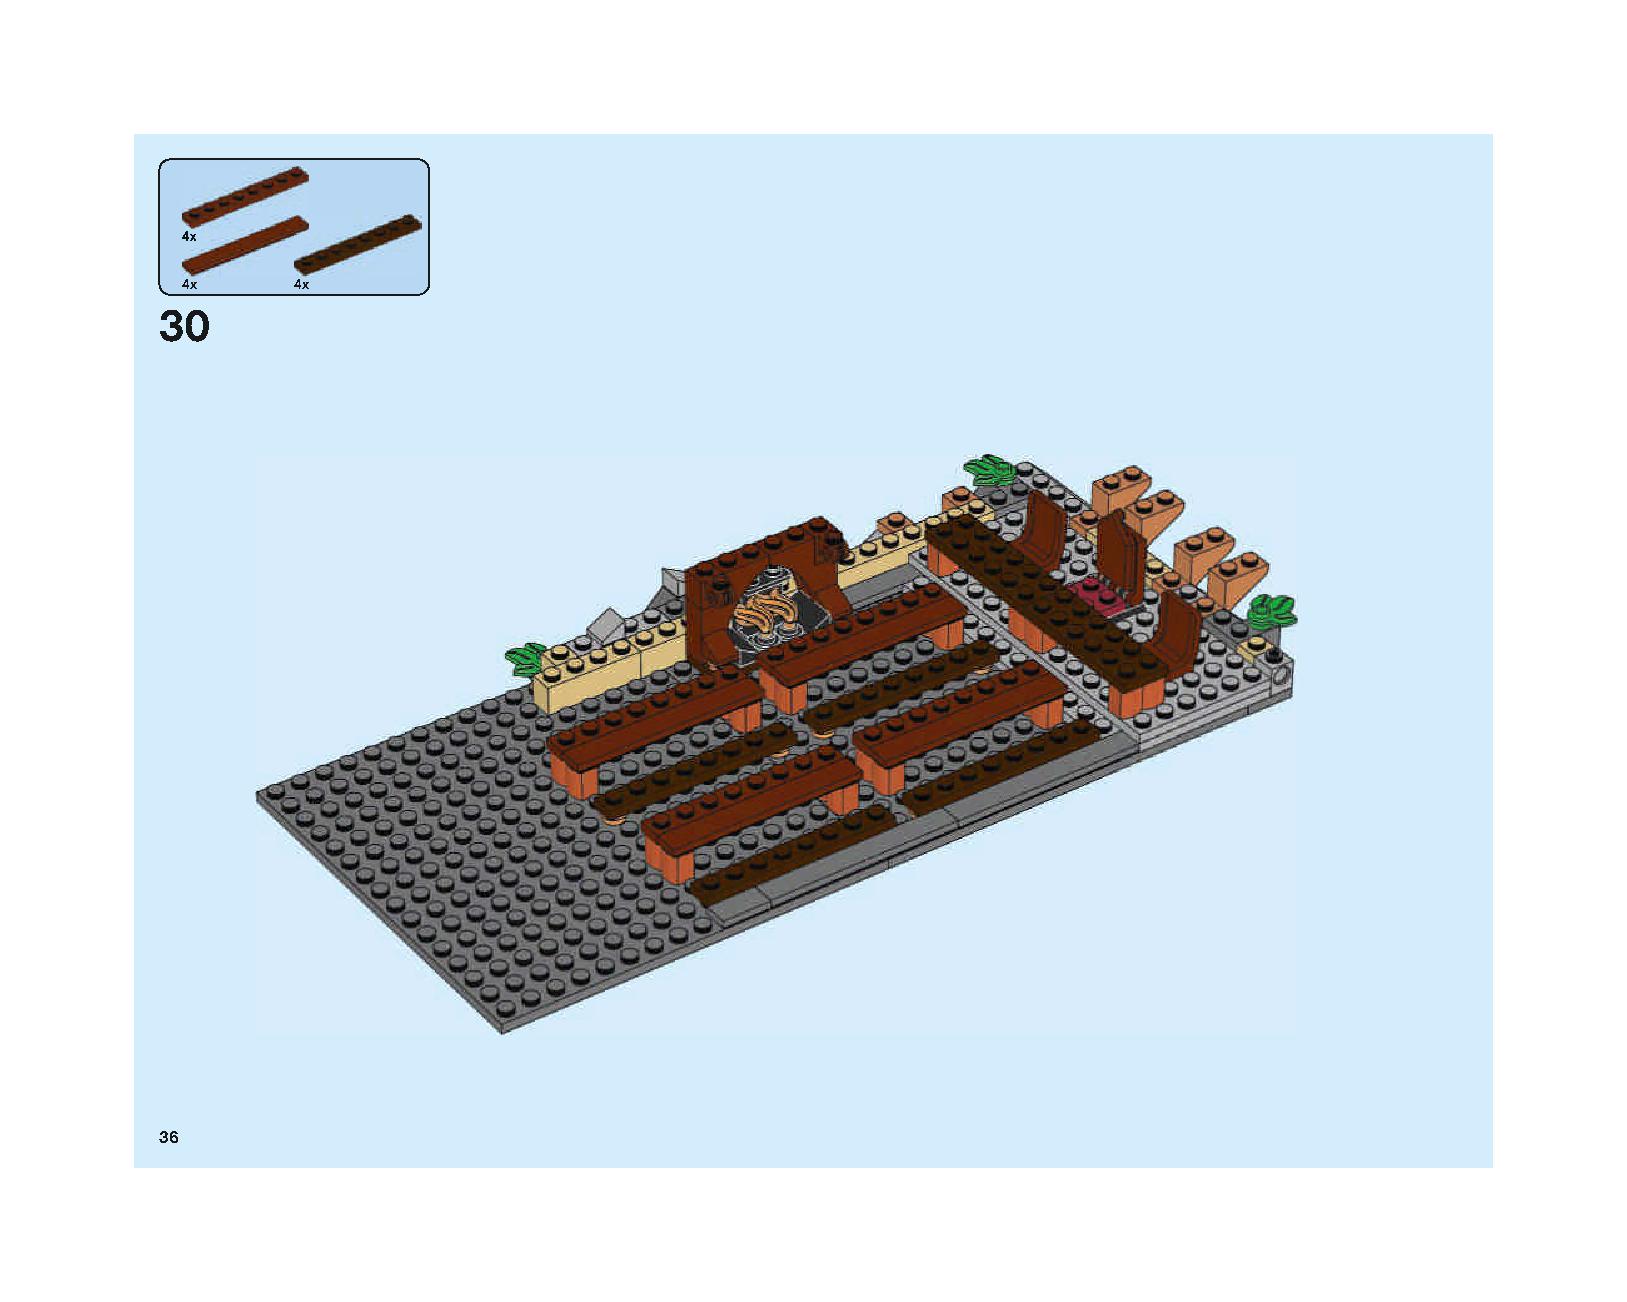 ホグワーツの大広間 75954 レゴの商品情報 レゴの説明書・組立方法 36 page